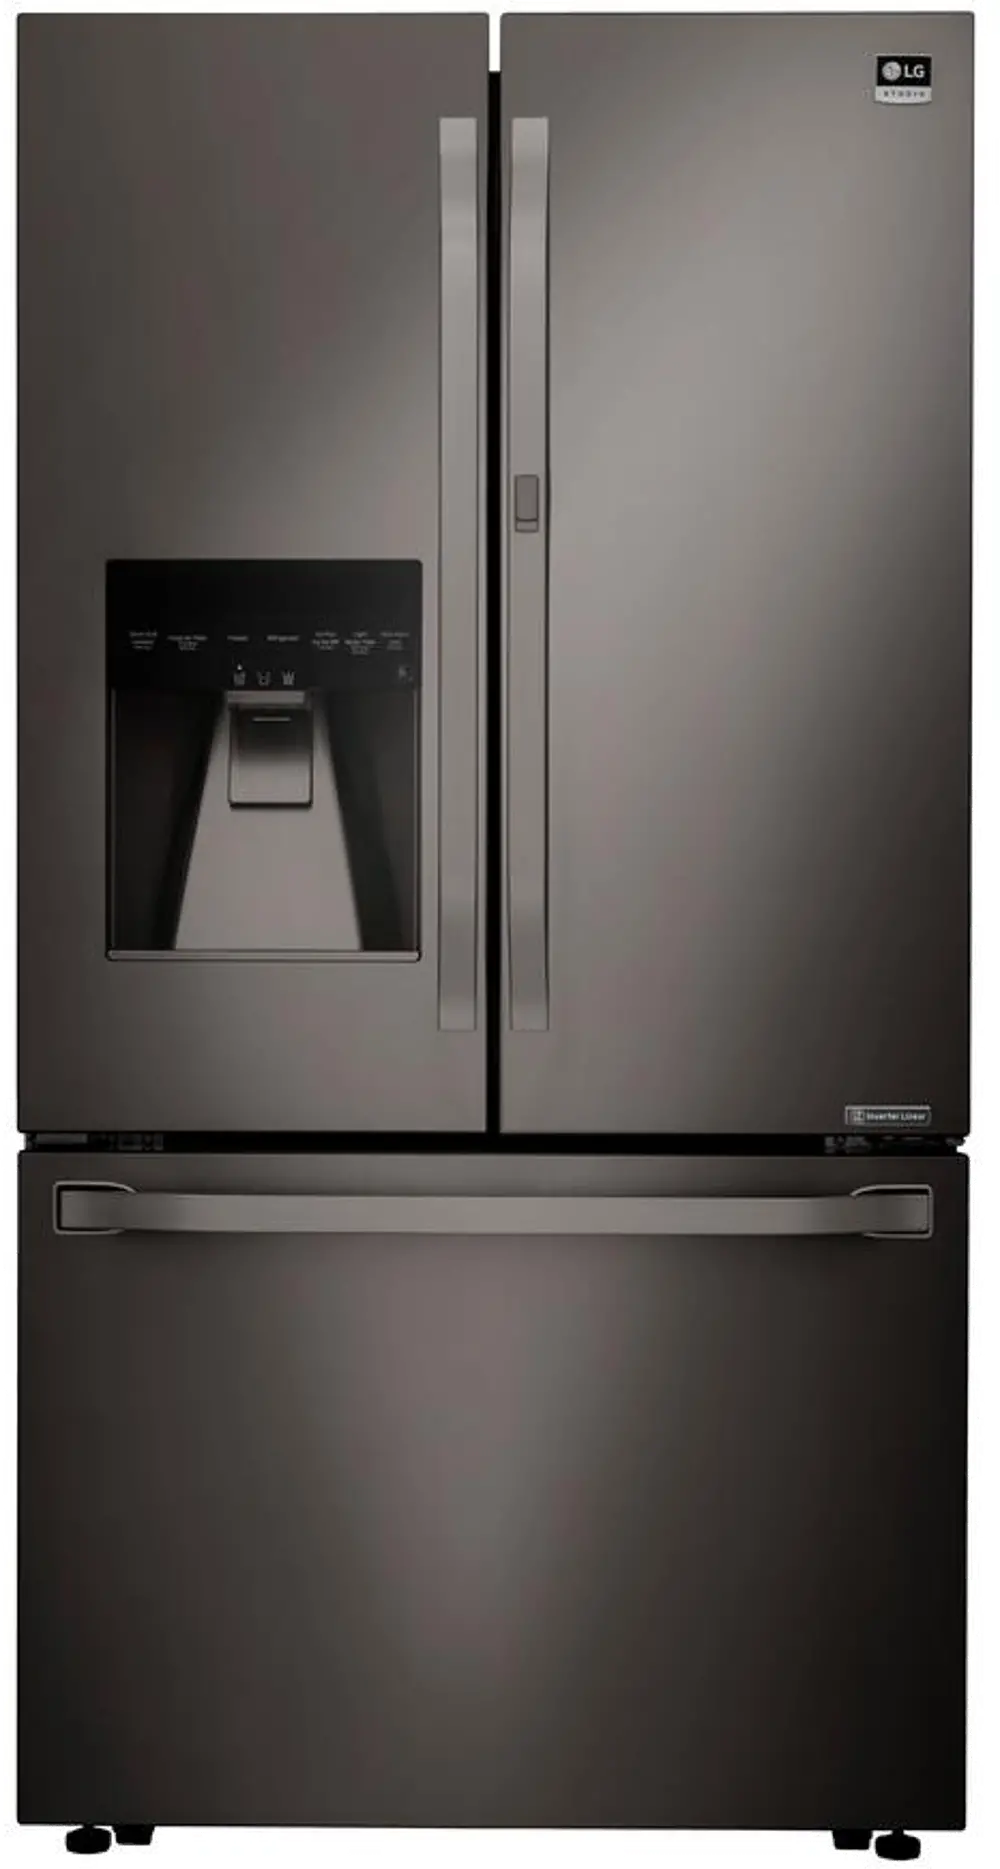 LSFXC2476D LG Studio French Door Counter Depth Smart Refrigerator with Door-in-Door - 23.5 cu. ft., 36 inch Black Stainless Steel-1